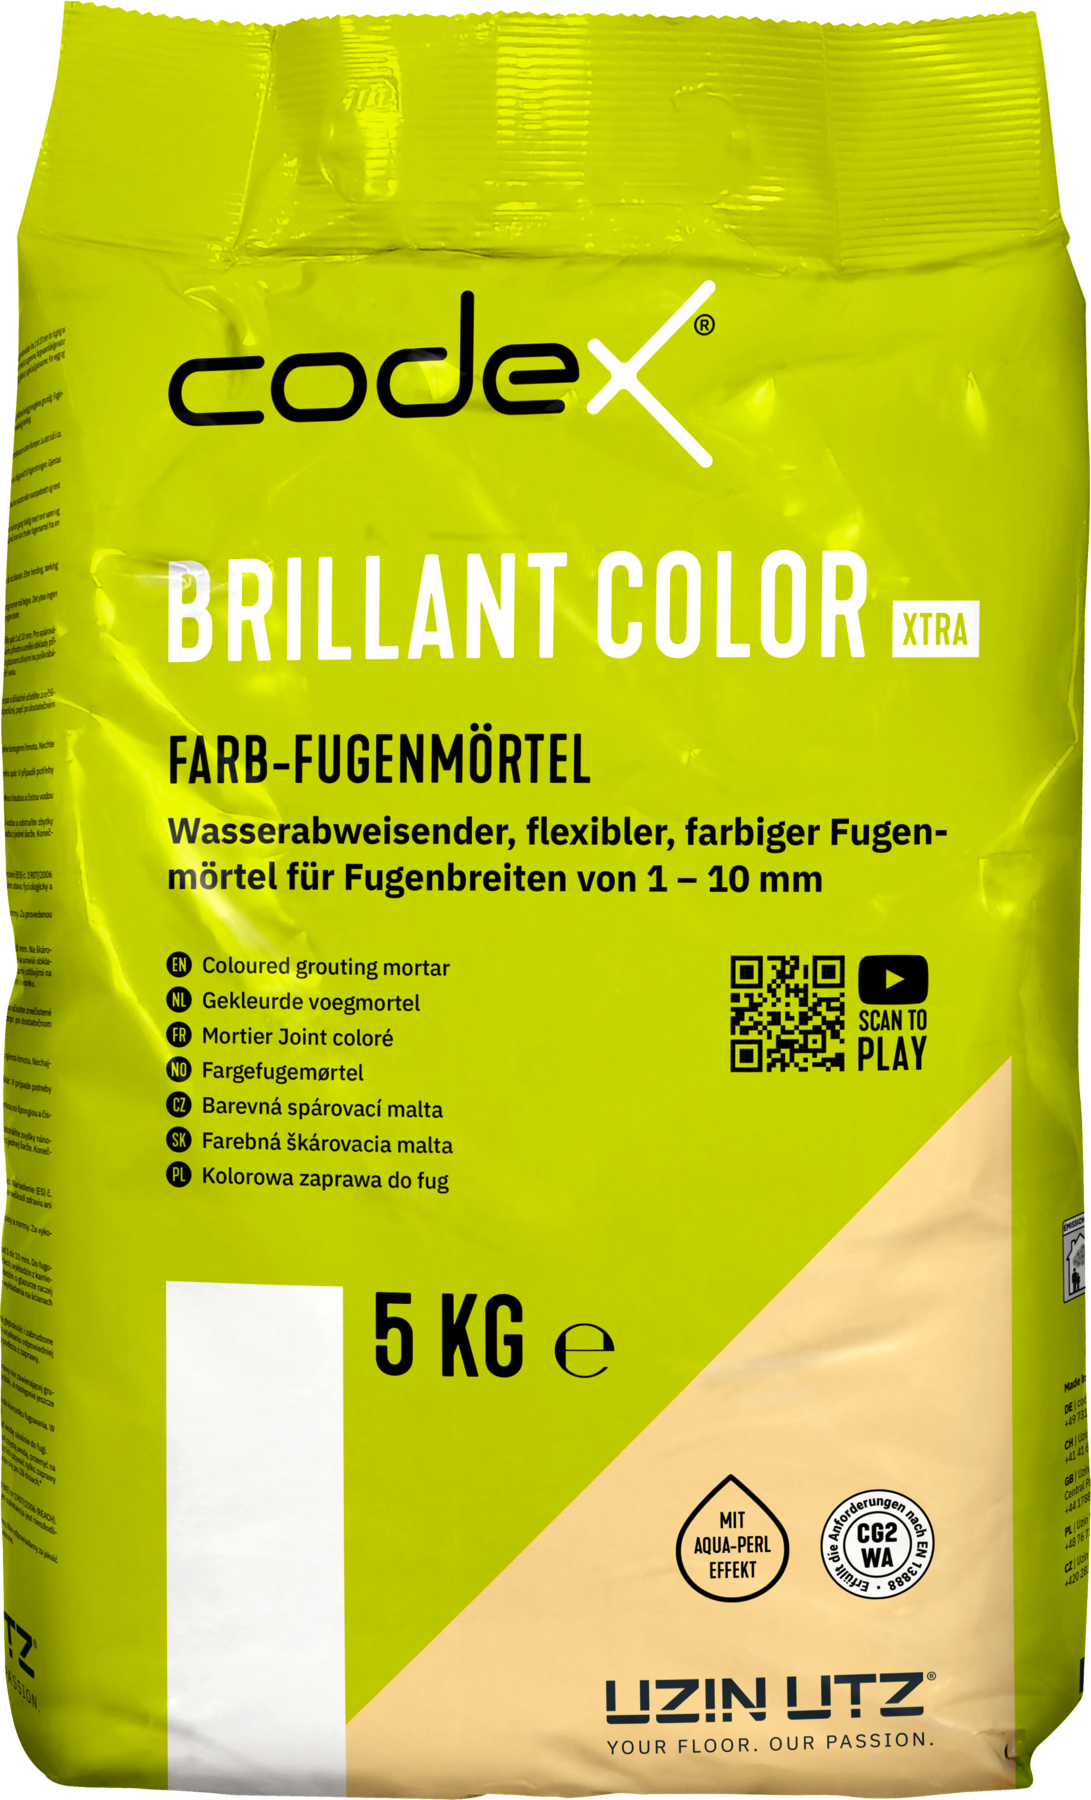 Codex Brillant Color Xtra Platingrau 5 kg Farbfugenmörtel